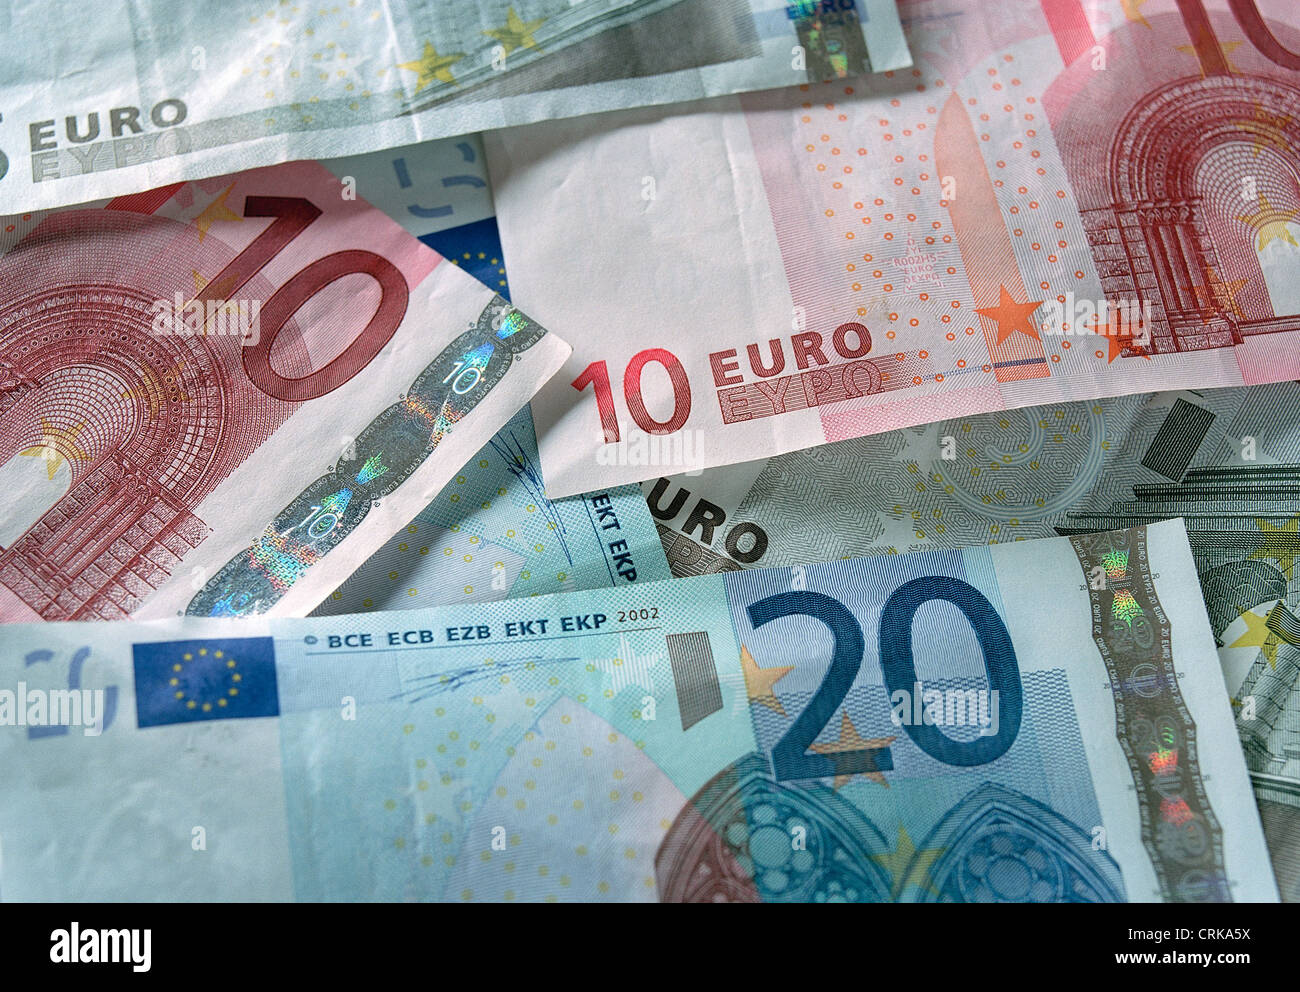 Euro notes to five, ten and twenty euros Stock Photo